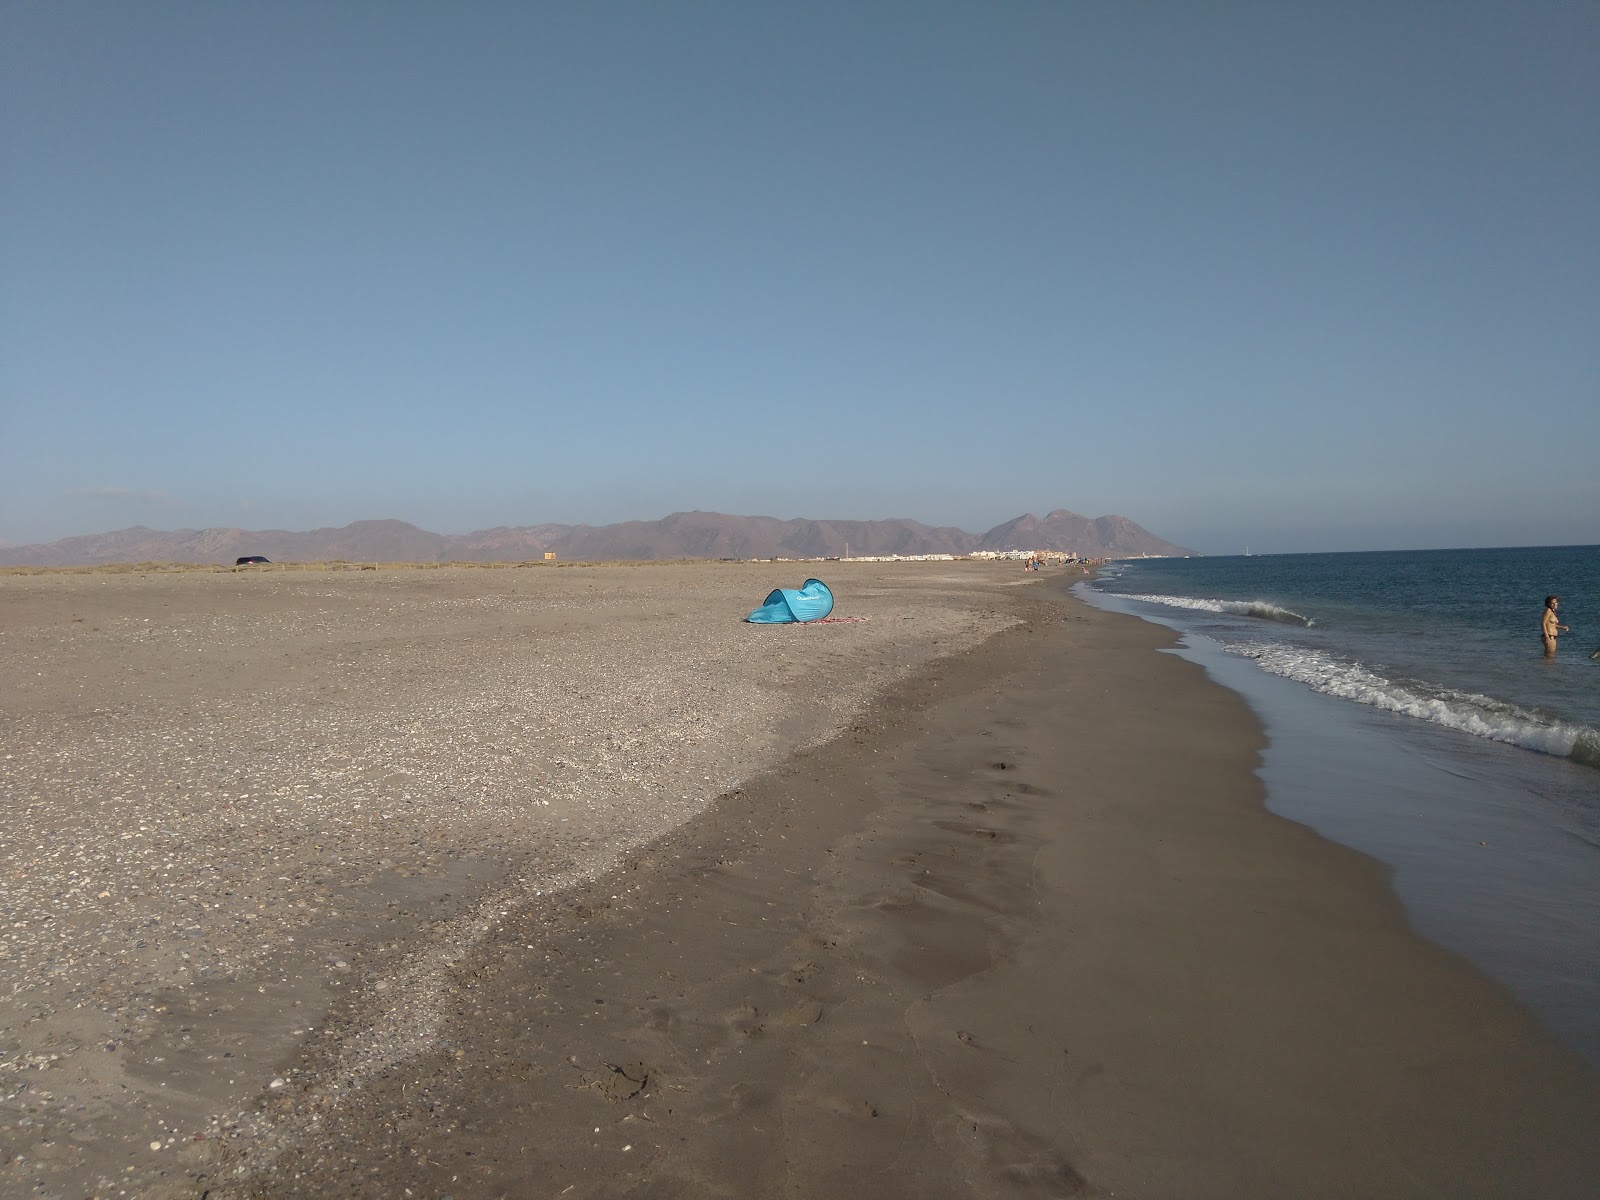 Las Amoladeras'in fotoğrafı gri kum ve çakıl yüzey ile